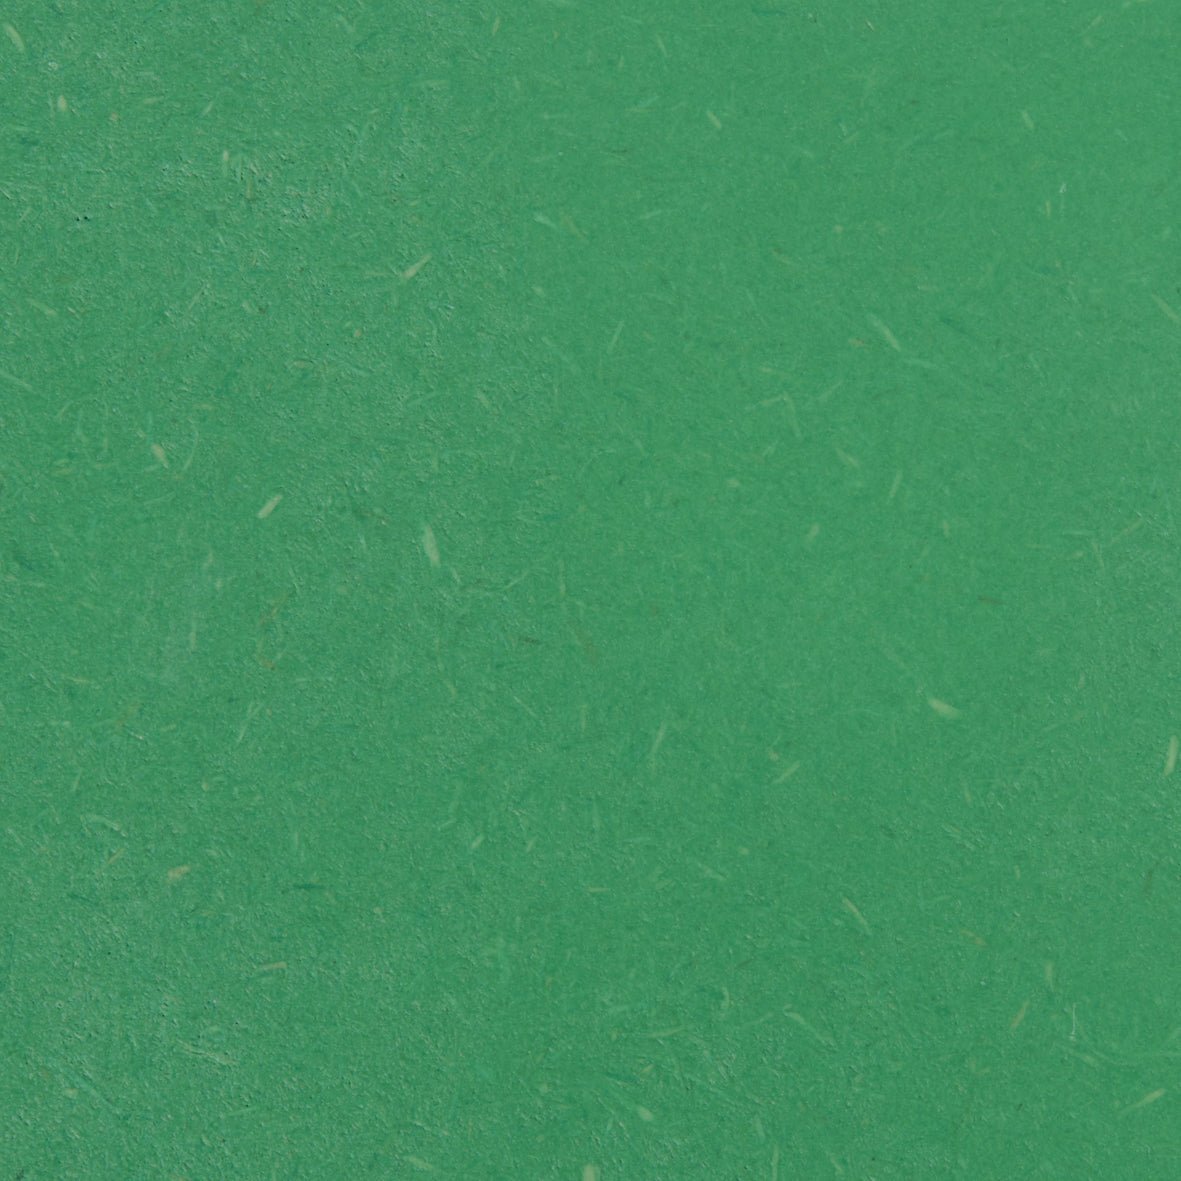 HAY Two-Colour pöytä 160x80 vihreä/ivory - Laatukaluste